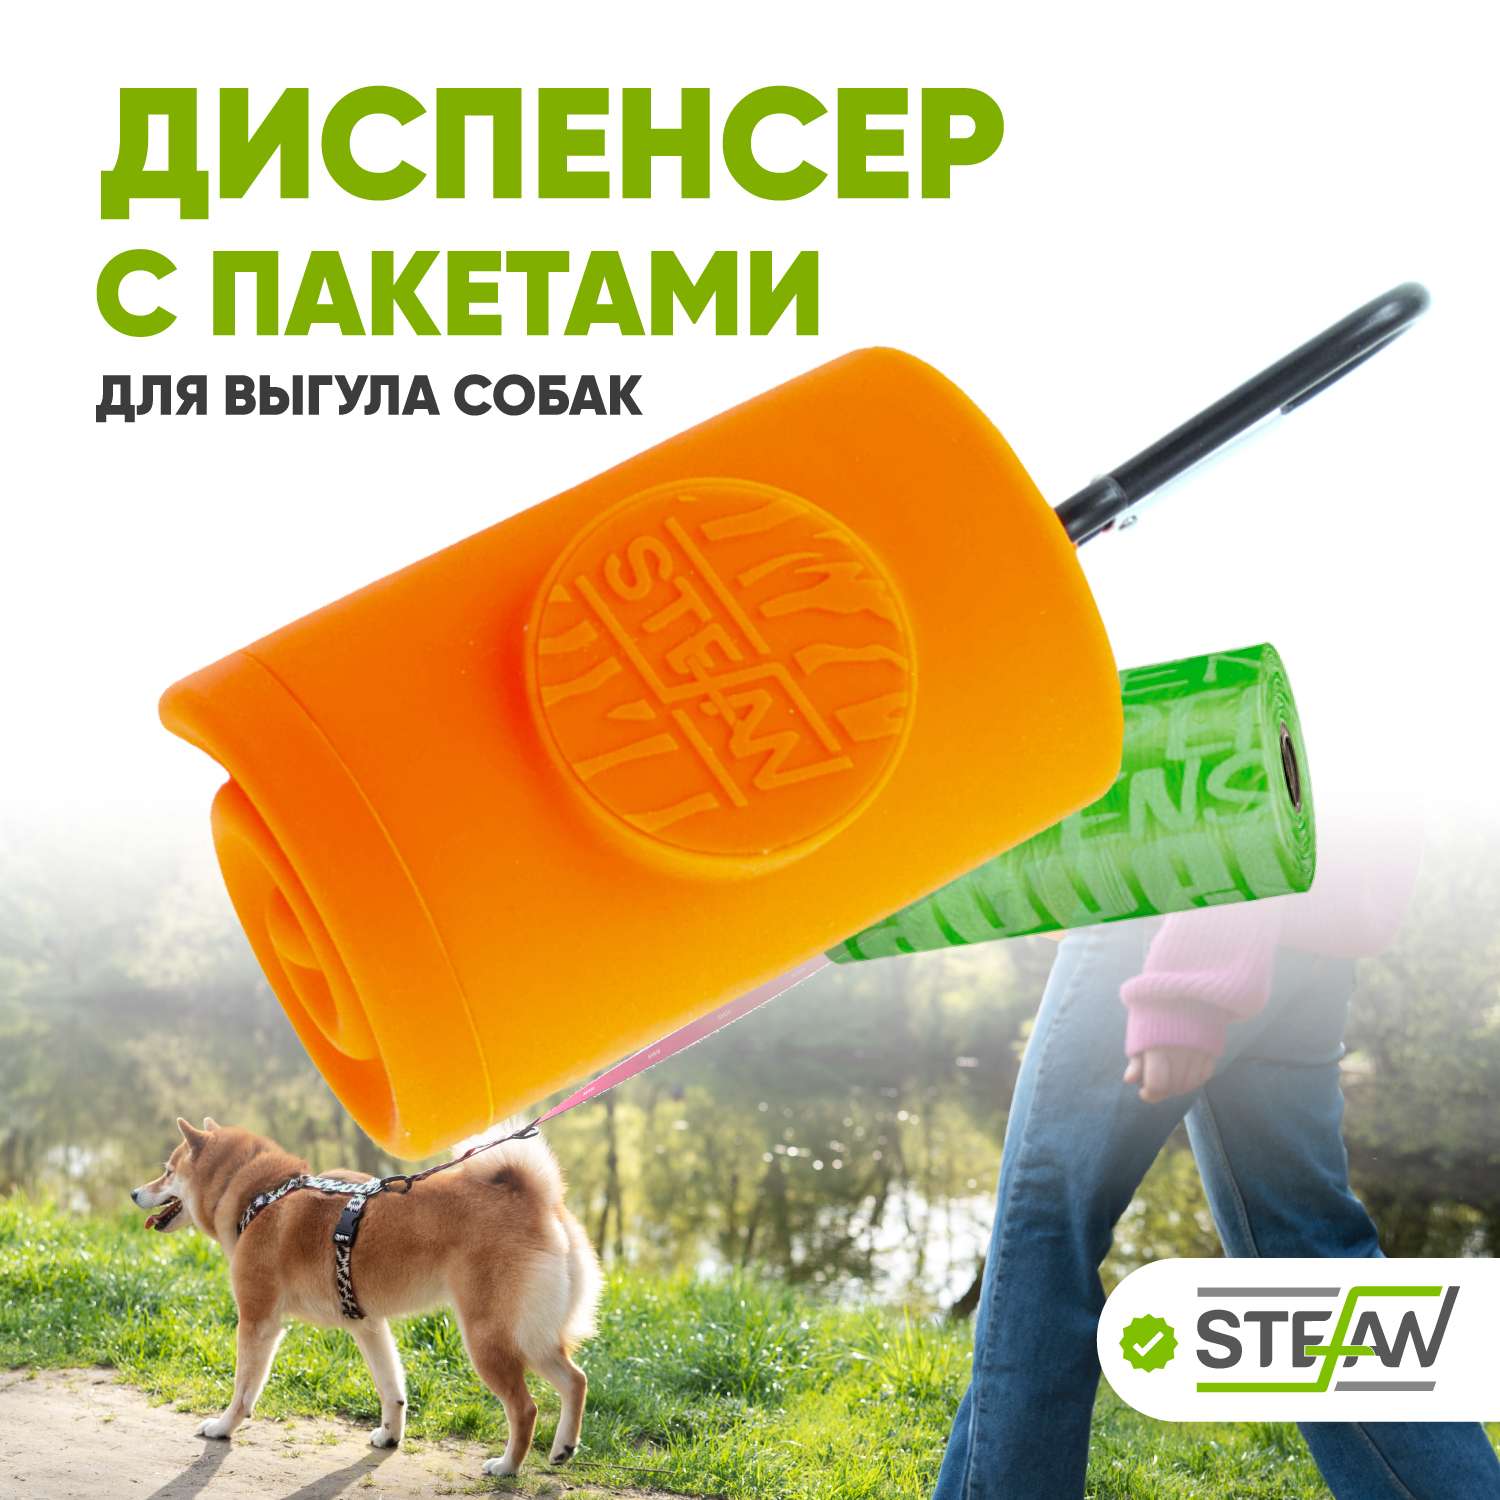 Контейнер Stefan для гигиенических пакетов оранжевый - фото 1